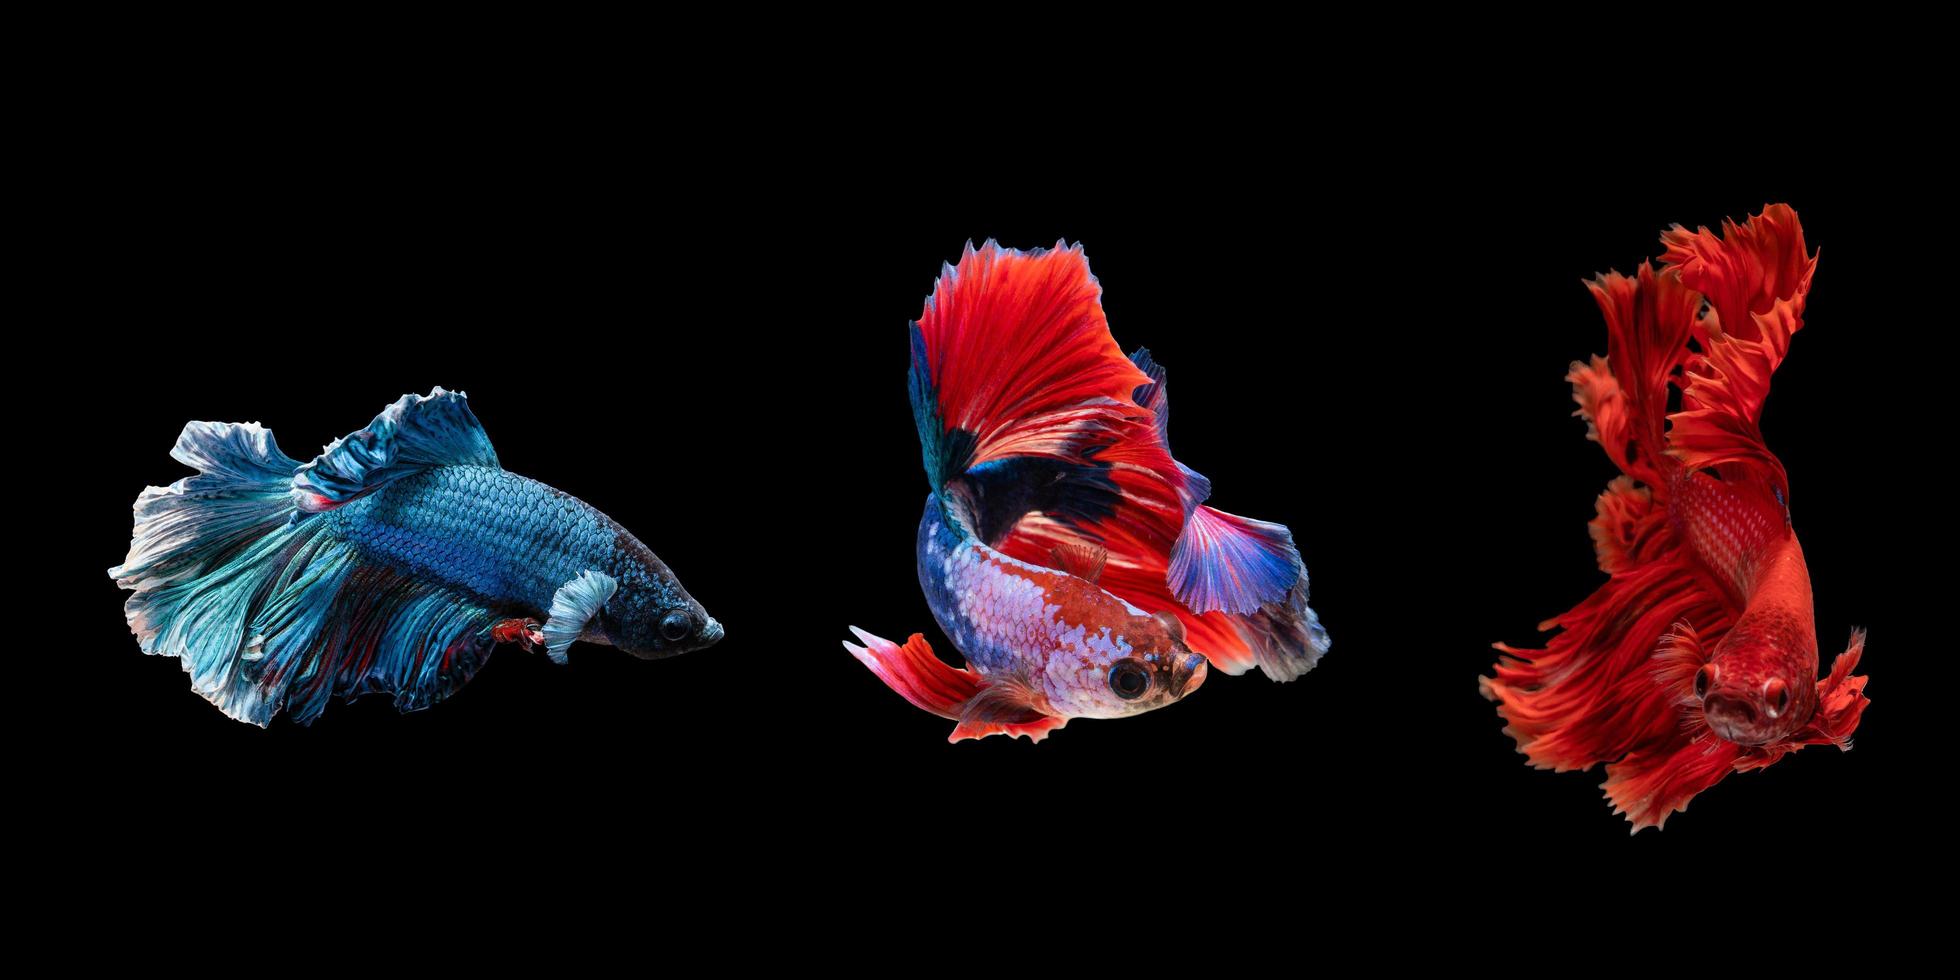 3 tipos do betta peixe este ter diferente cores foto